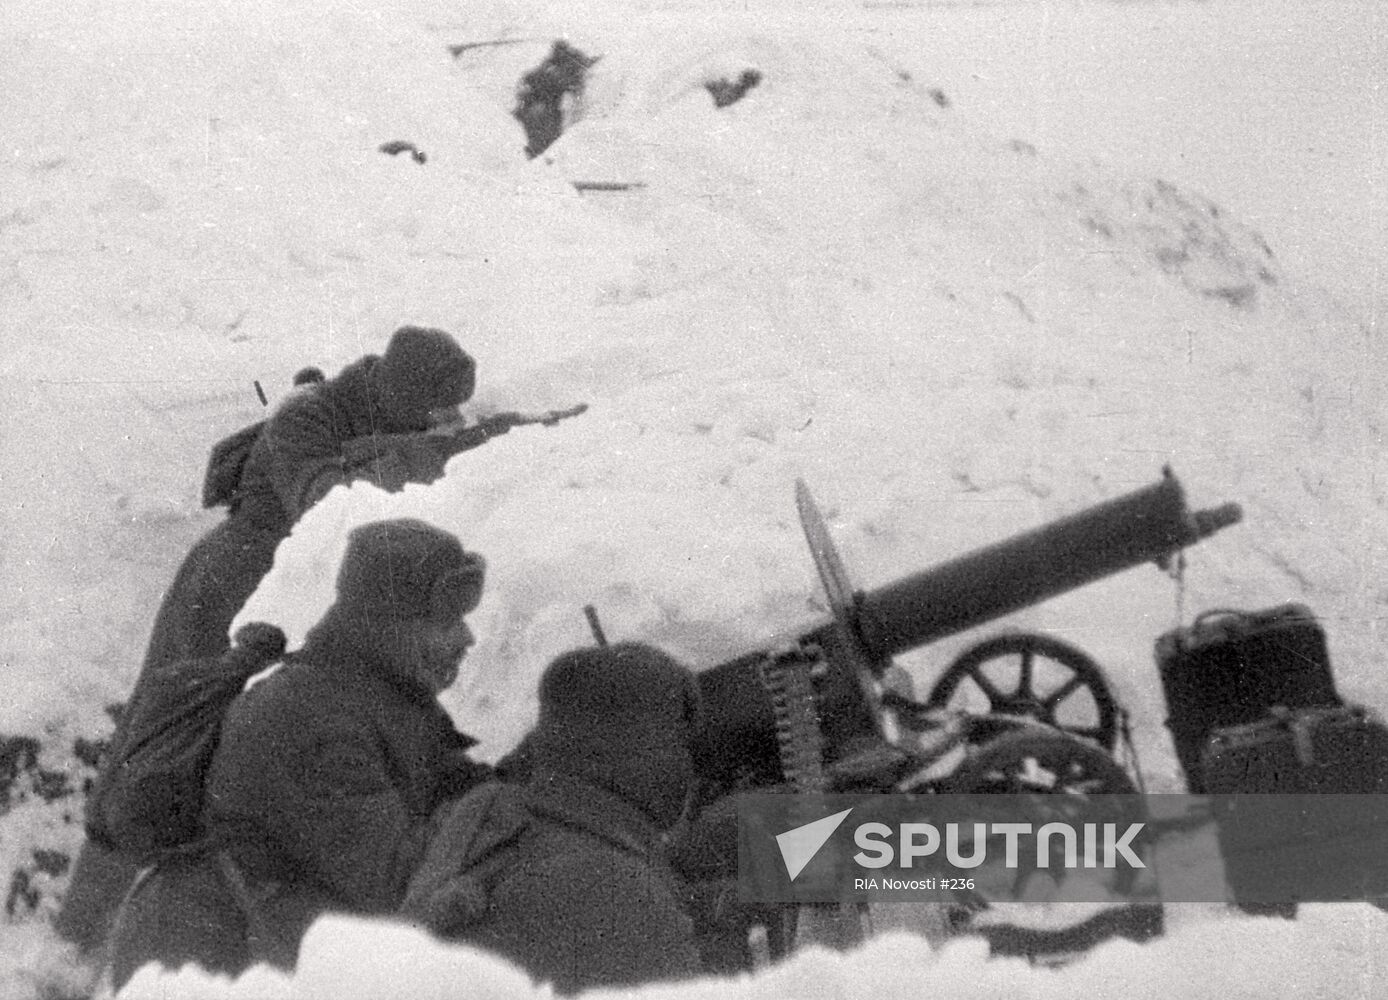 WWII SOLDIERS MACHINE-GUN BATTLE